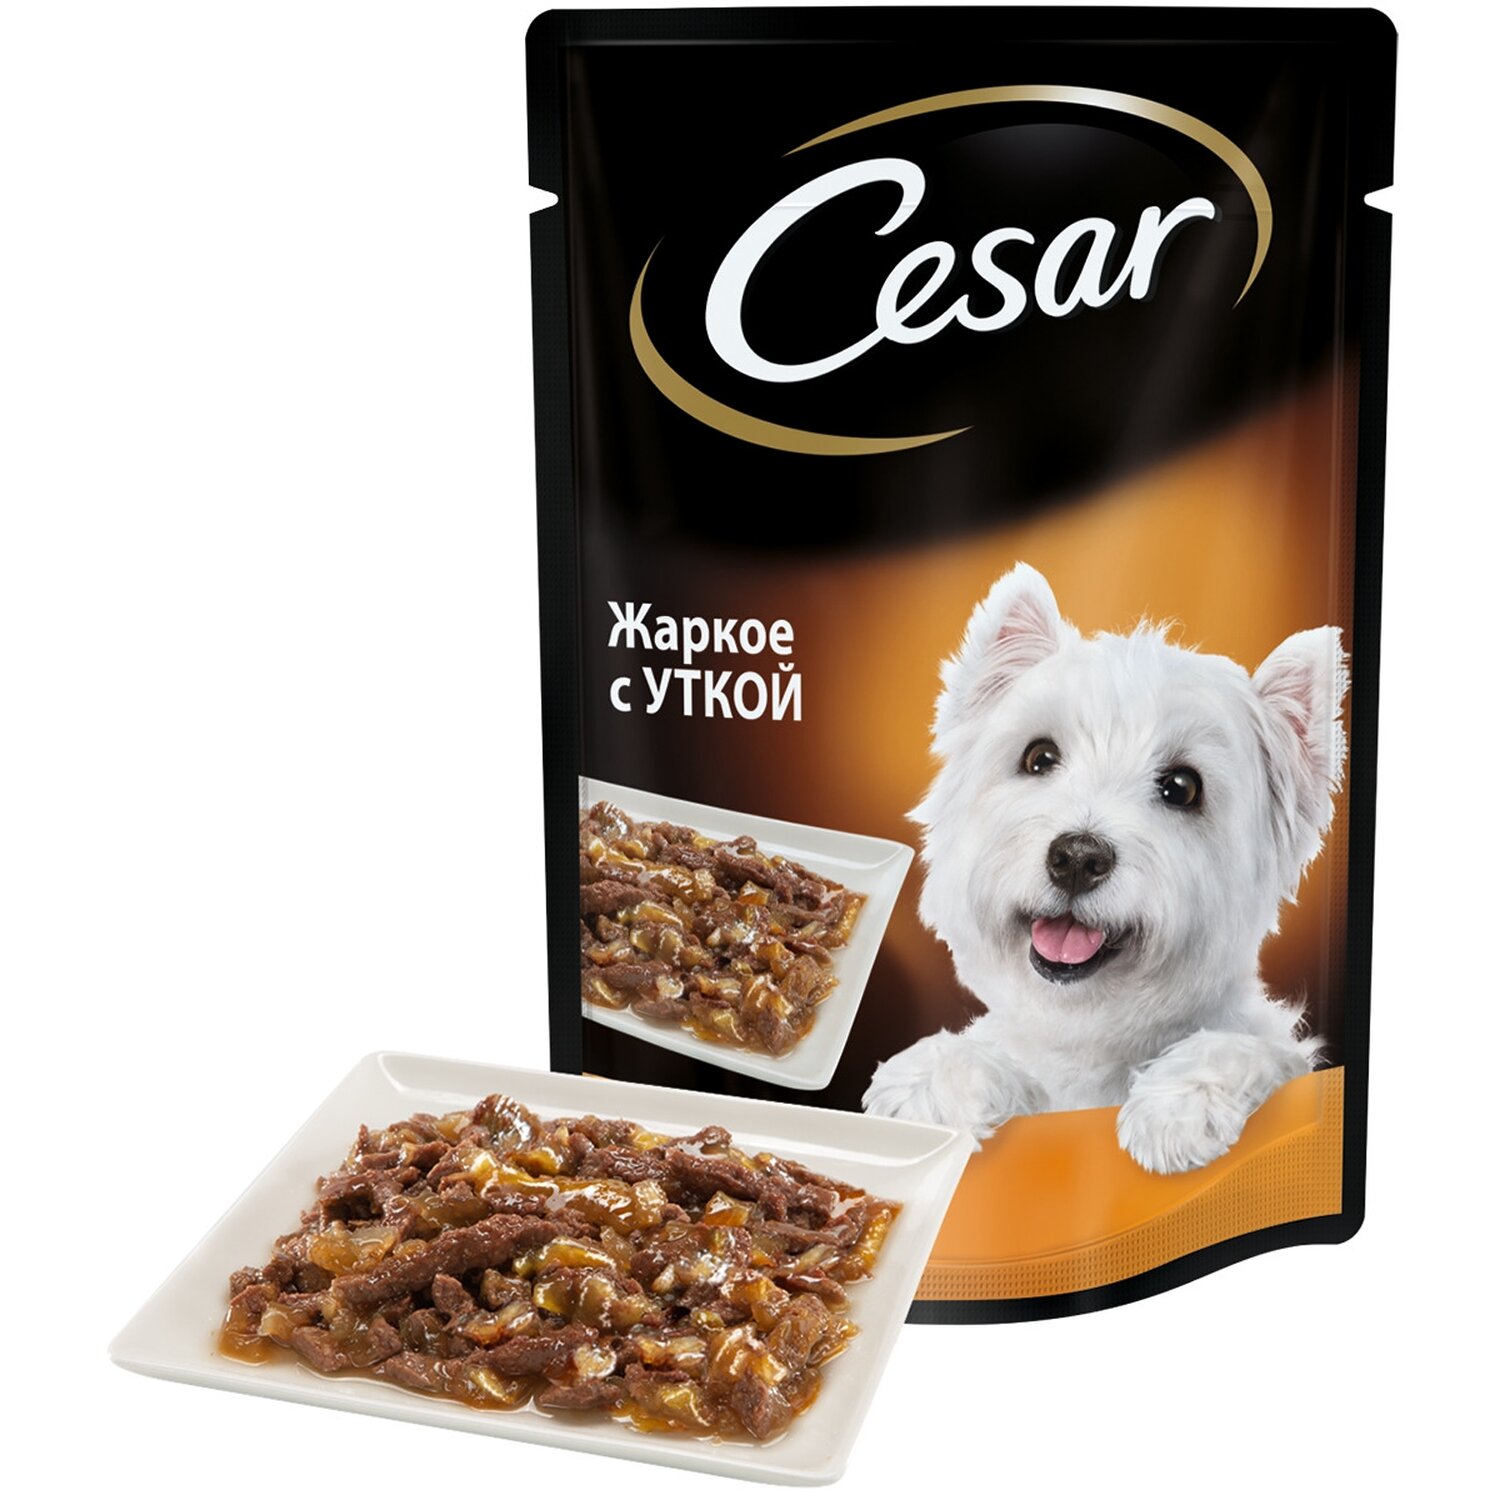 Корм Цезарь для собак в пакетиках: обзор